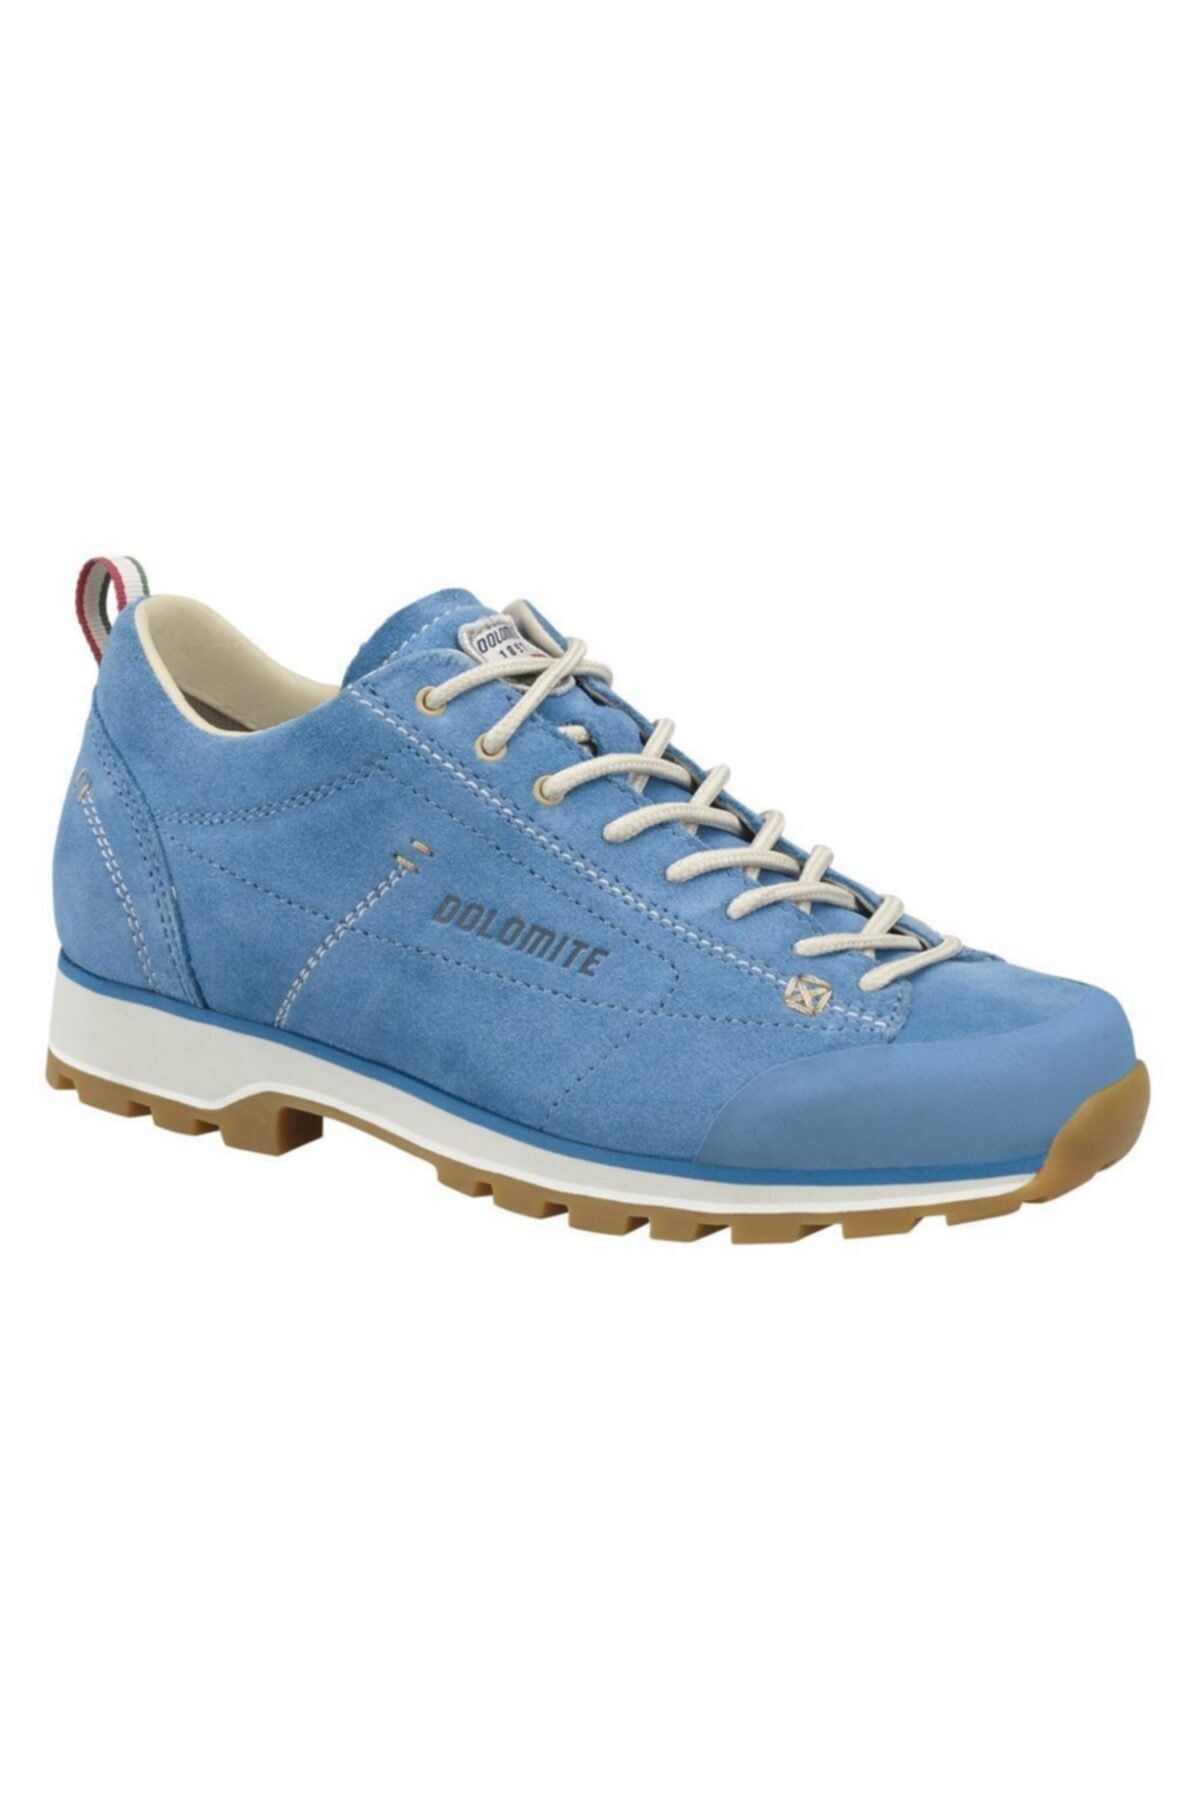 Dolomite Kadın Ayakkabı Mavi